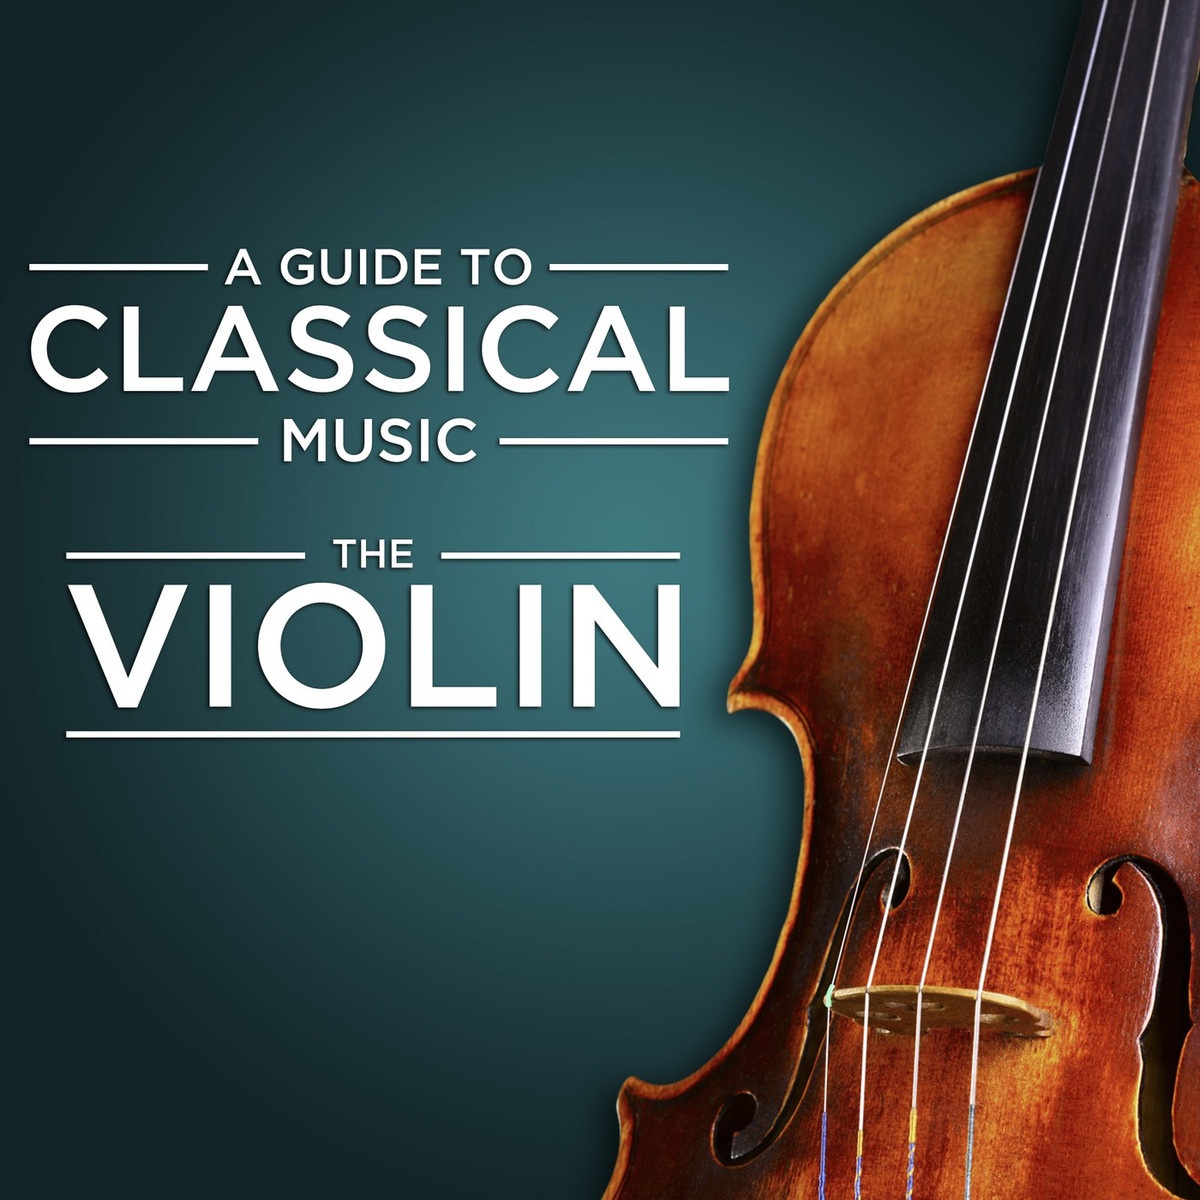 Sonata in A Major for Violin and Piano, M. 8: III. Recitativo - Fantasia (Ben moderato - Largamente - Molto vivace)